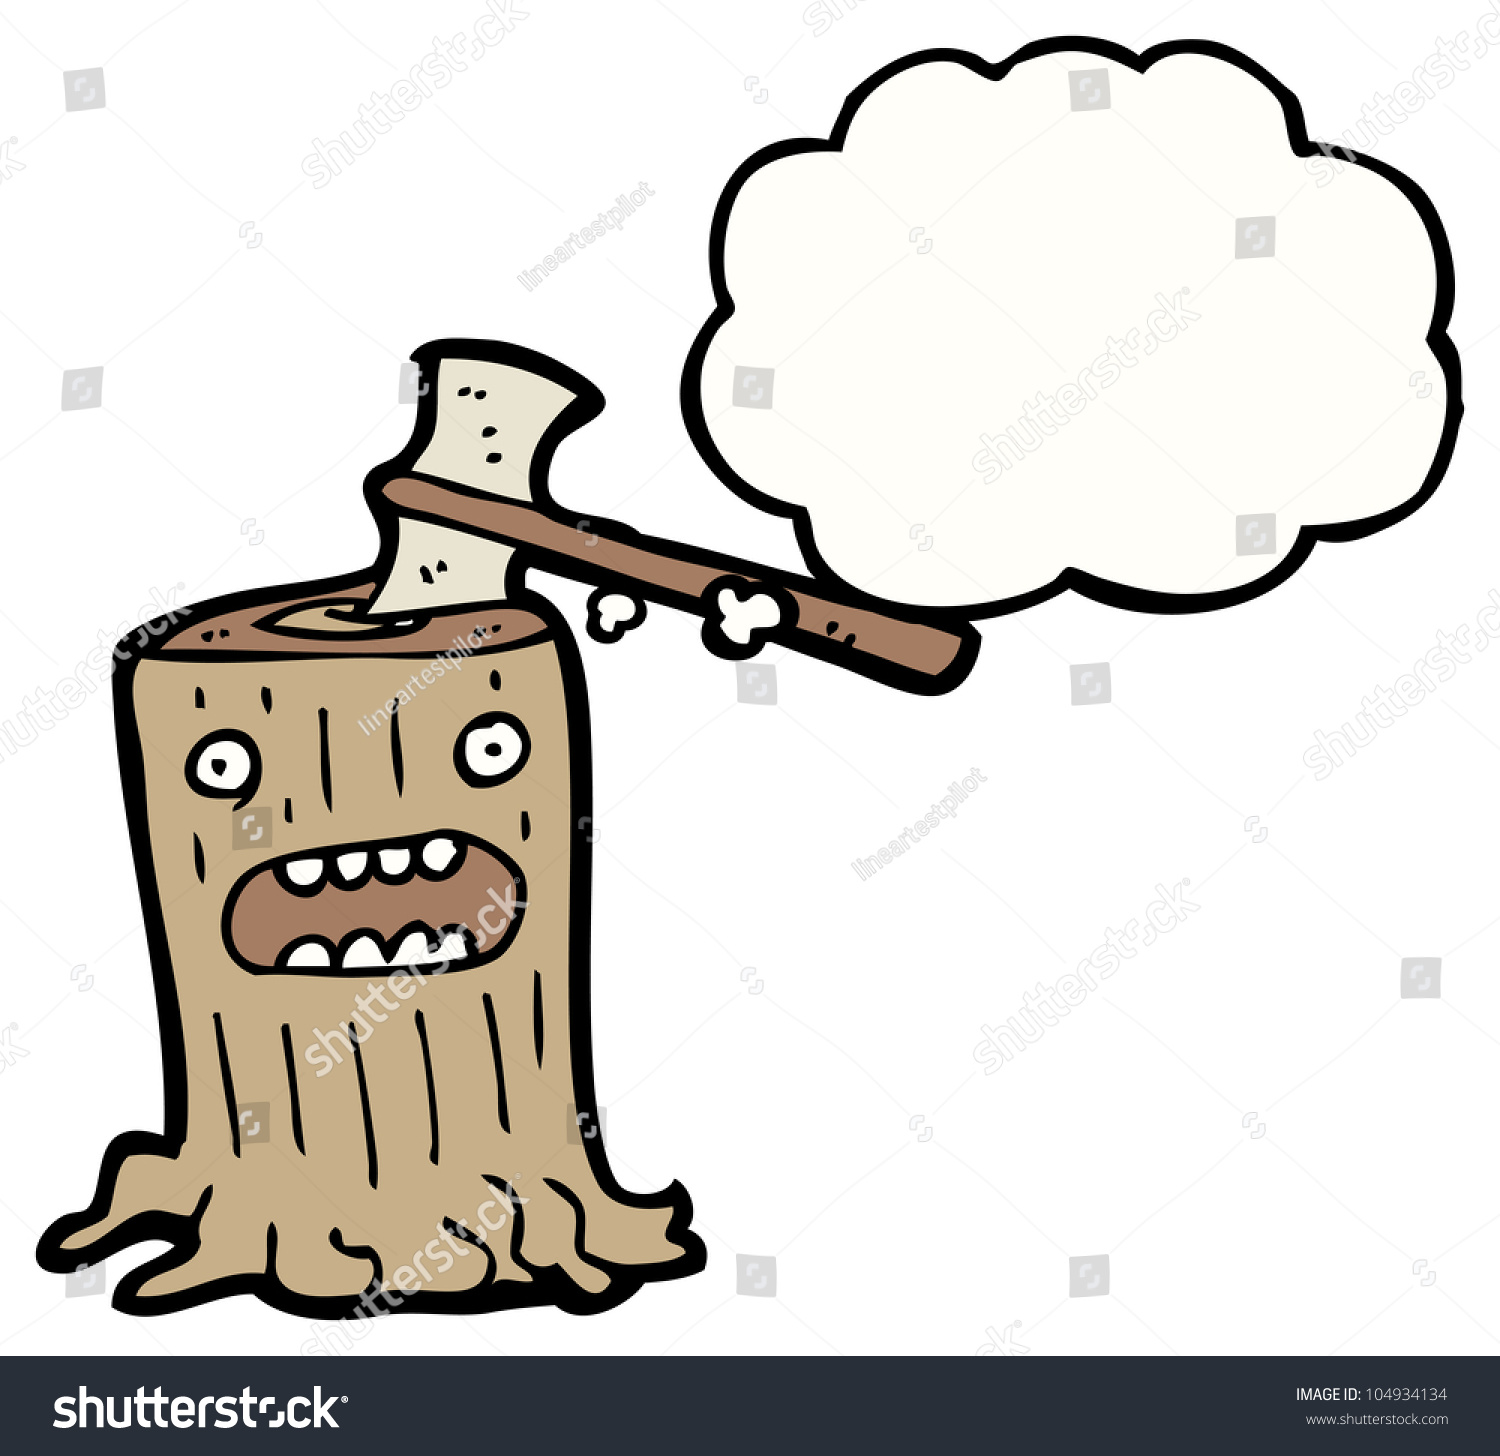 Cartoon Tree Stump Stock Photo 104934134 : Shutterstock